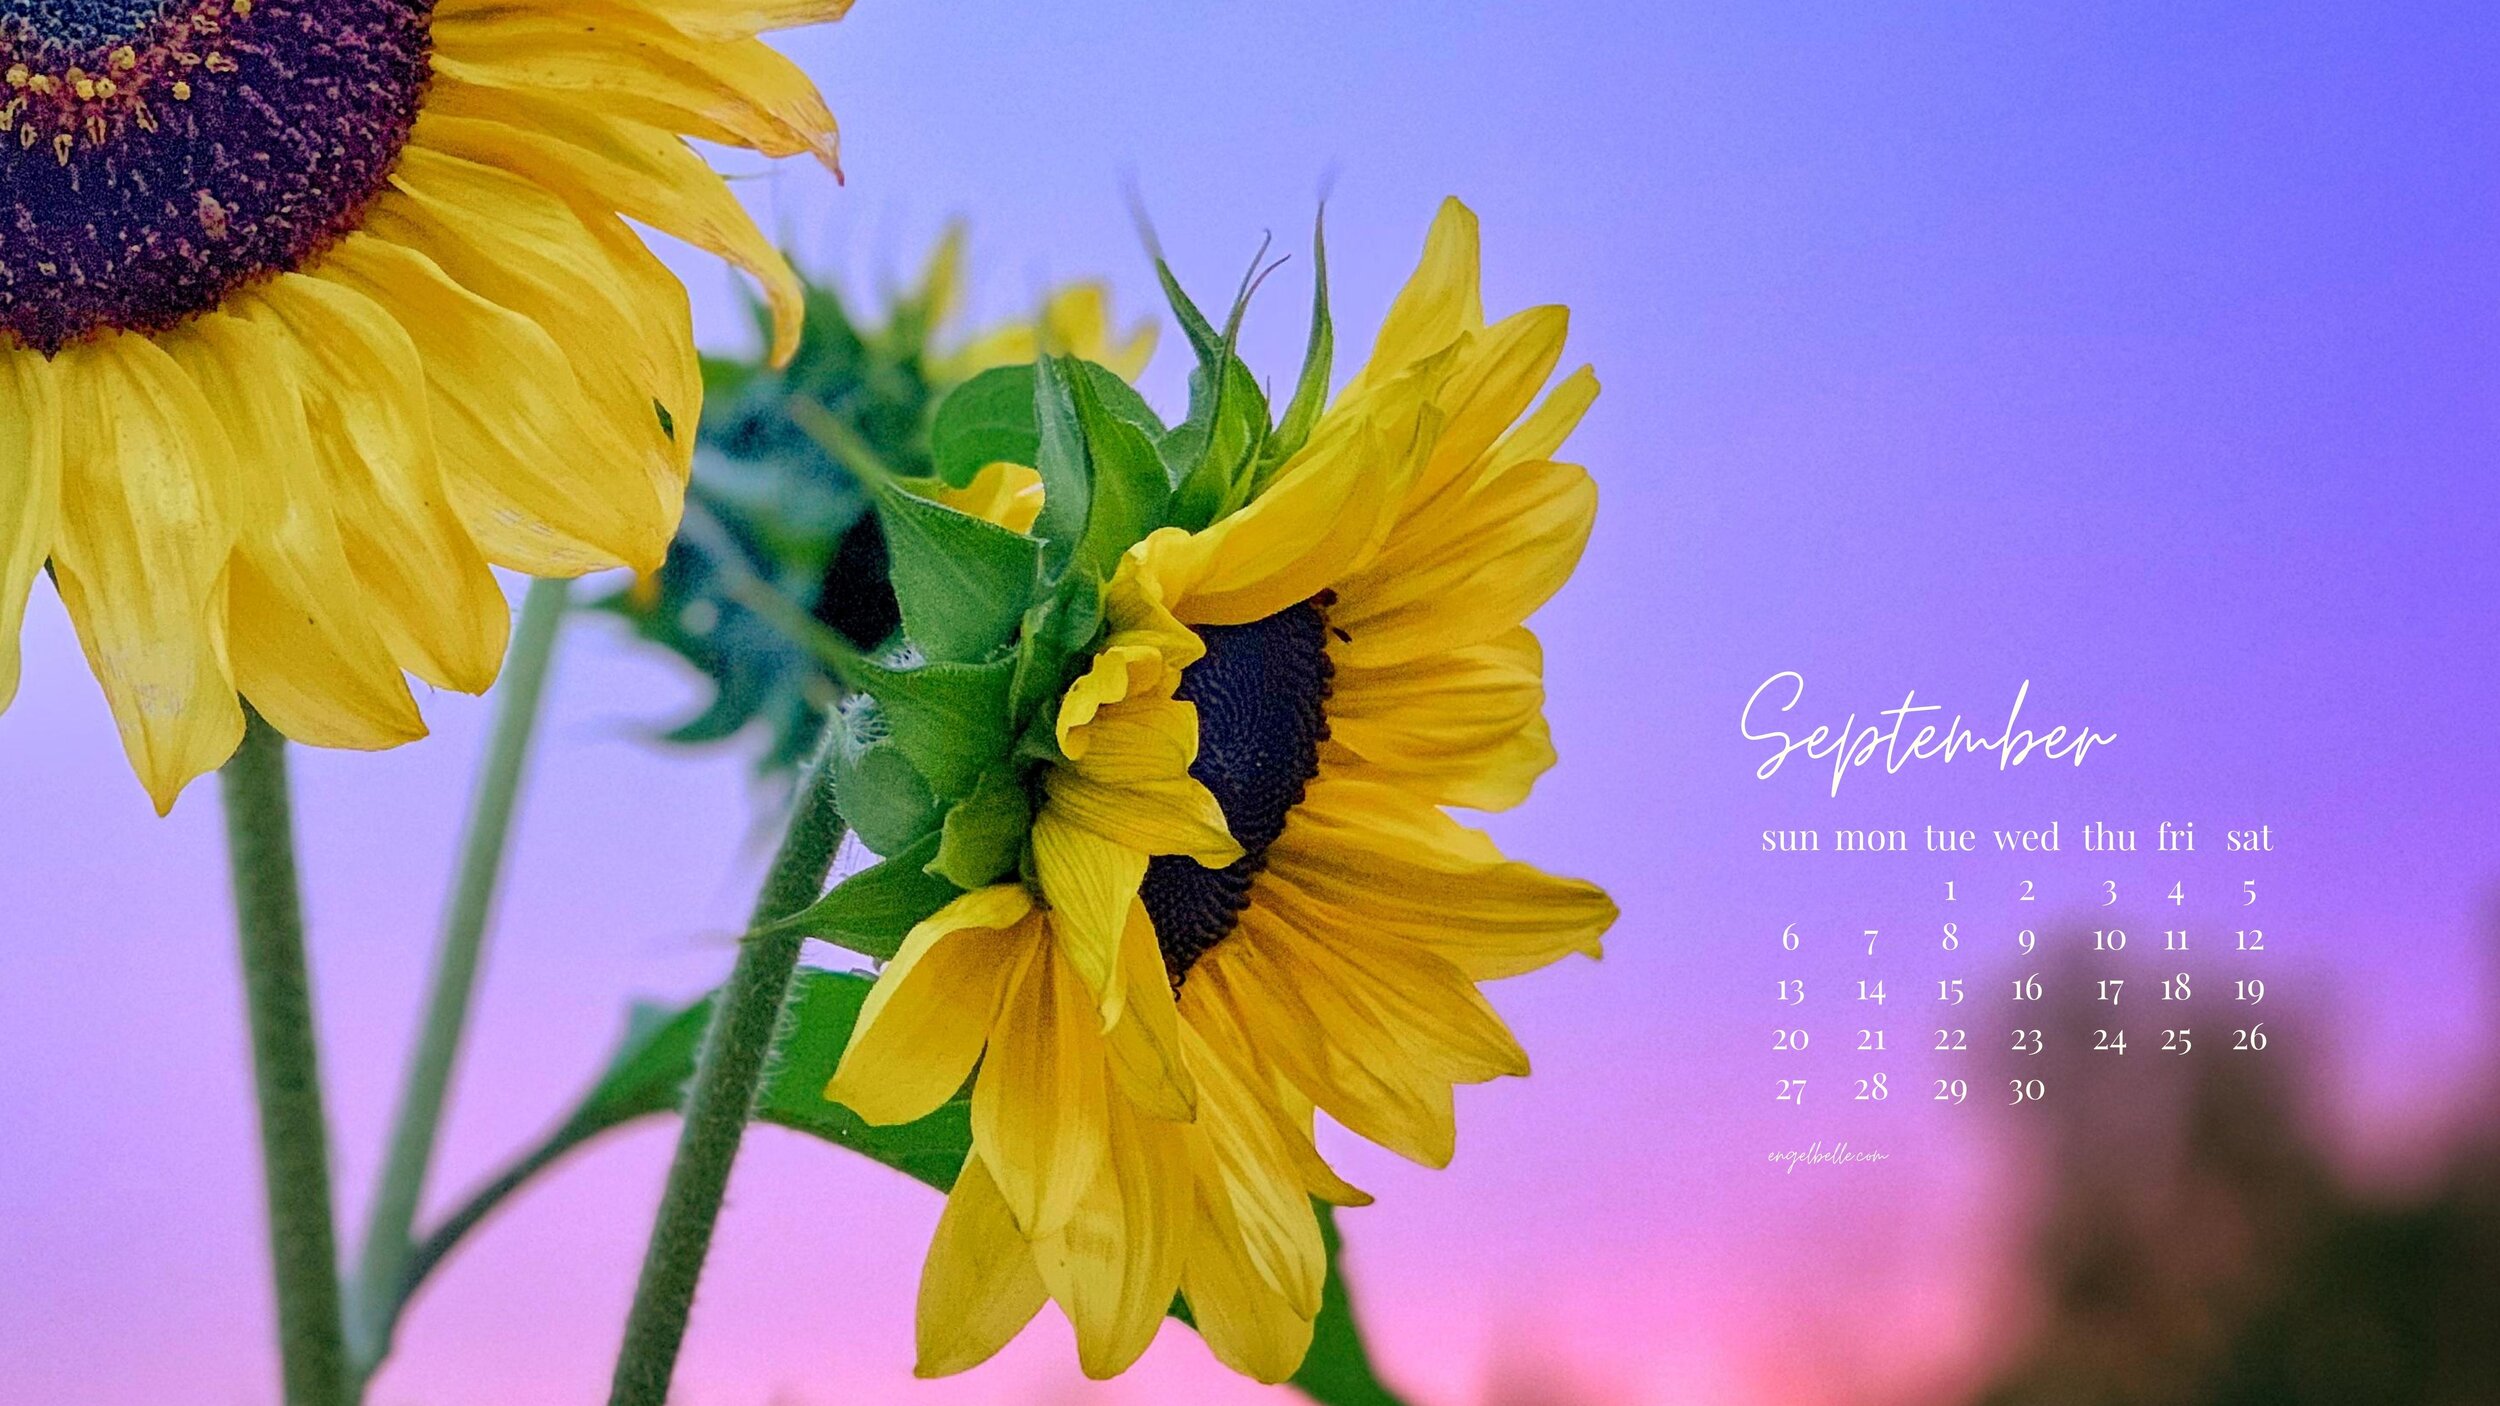 Engelbelle September  Sunflowers 2 2020 Desktop Wallpaper.jpg